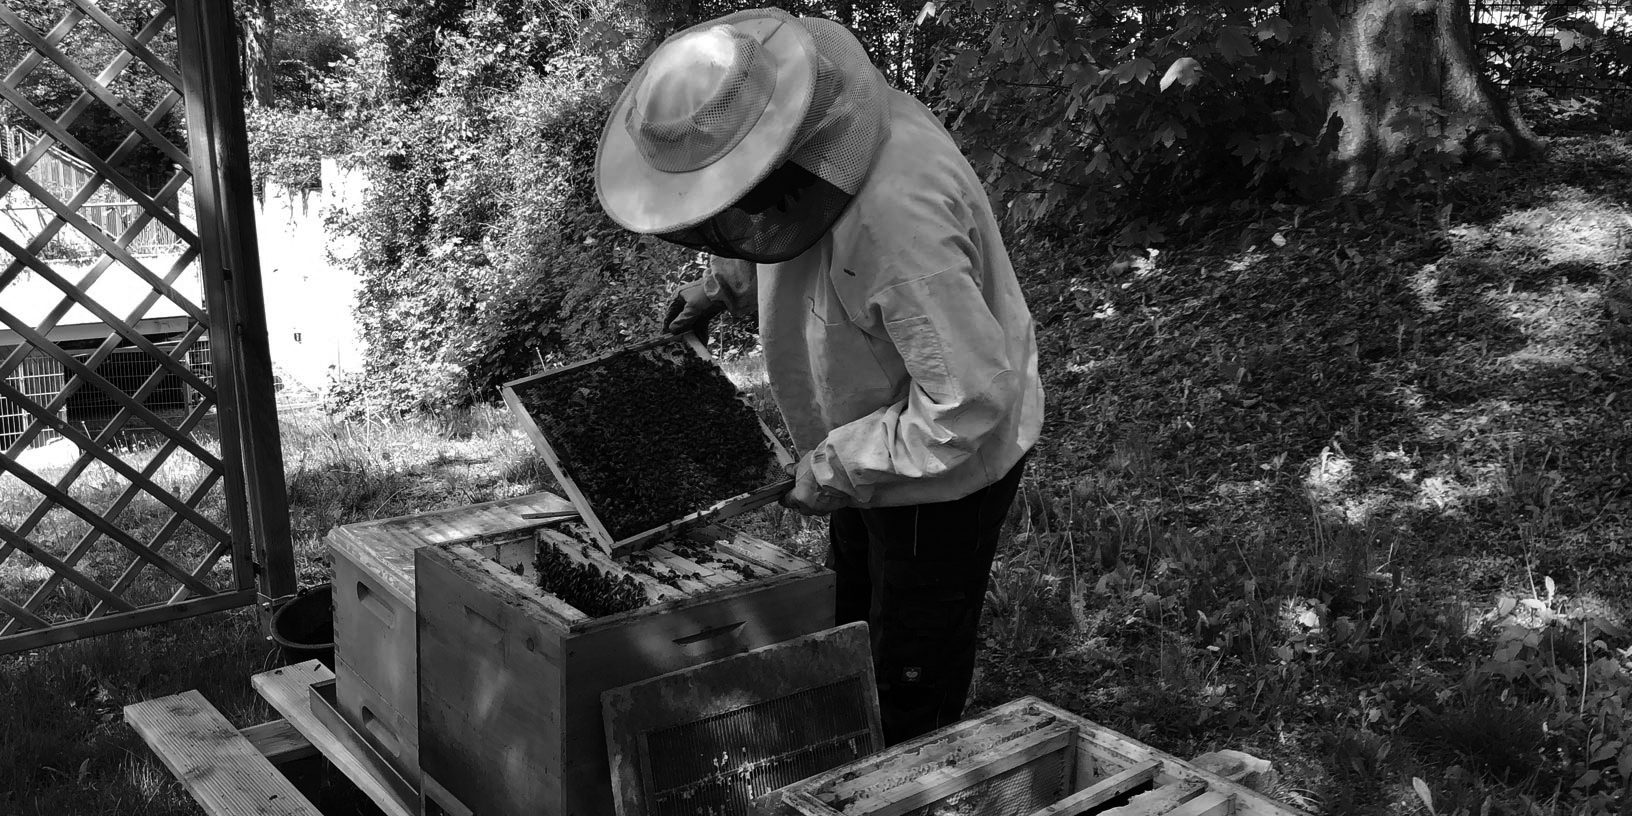 Unsere Bienenstöcke, die unser Imker gerade kontrolliert. Er hat eine Bienenwabe in der Hand.